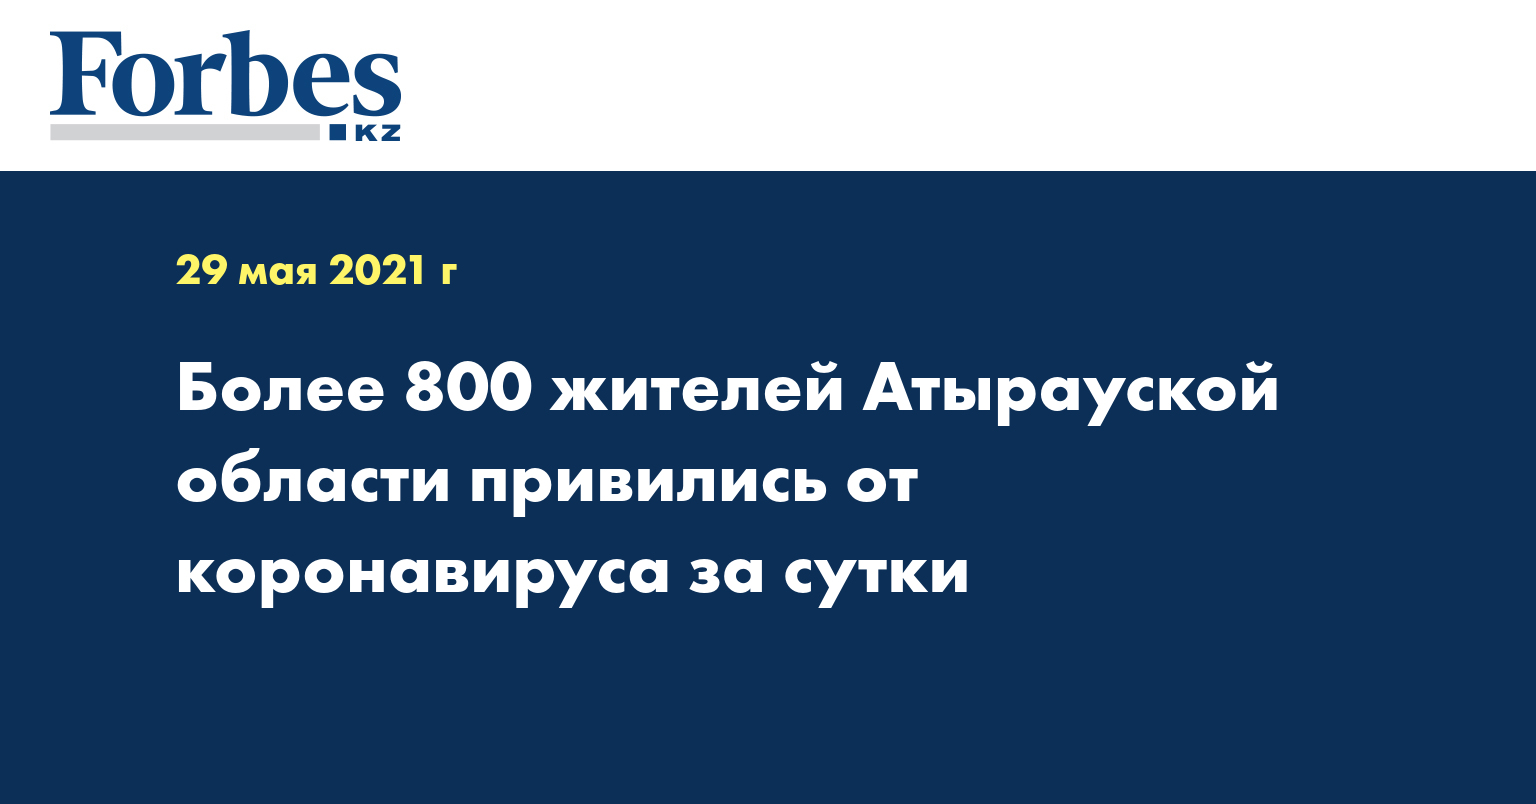 Более 800 жителей Атырауской области привились от коронавируса за сутки